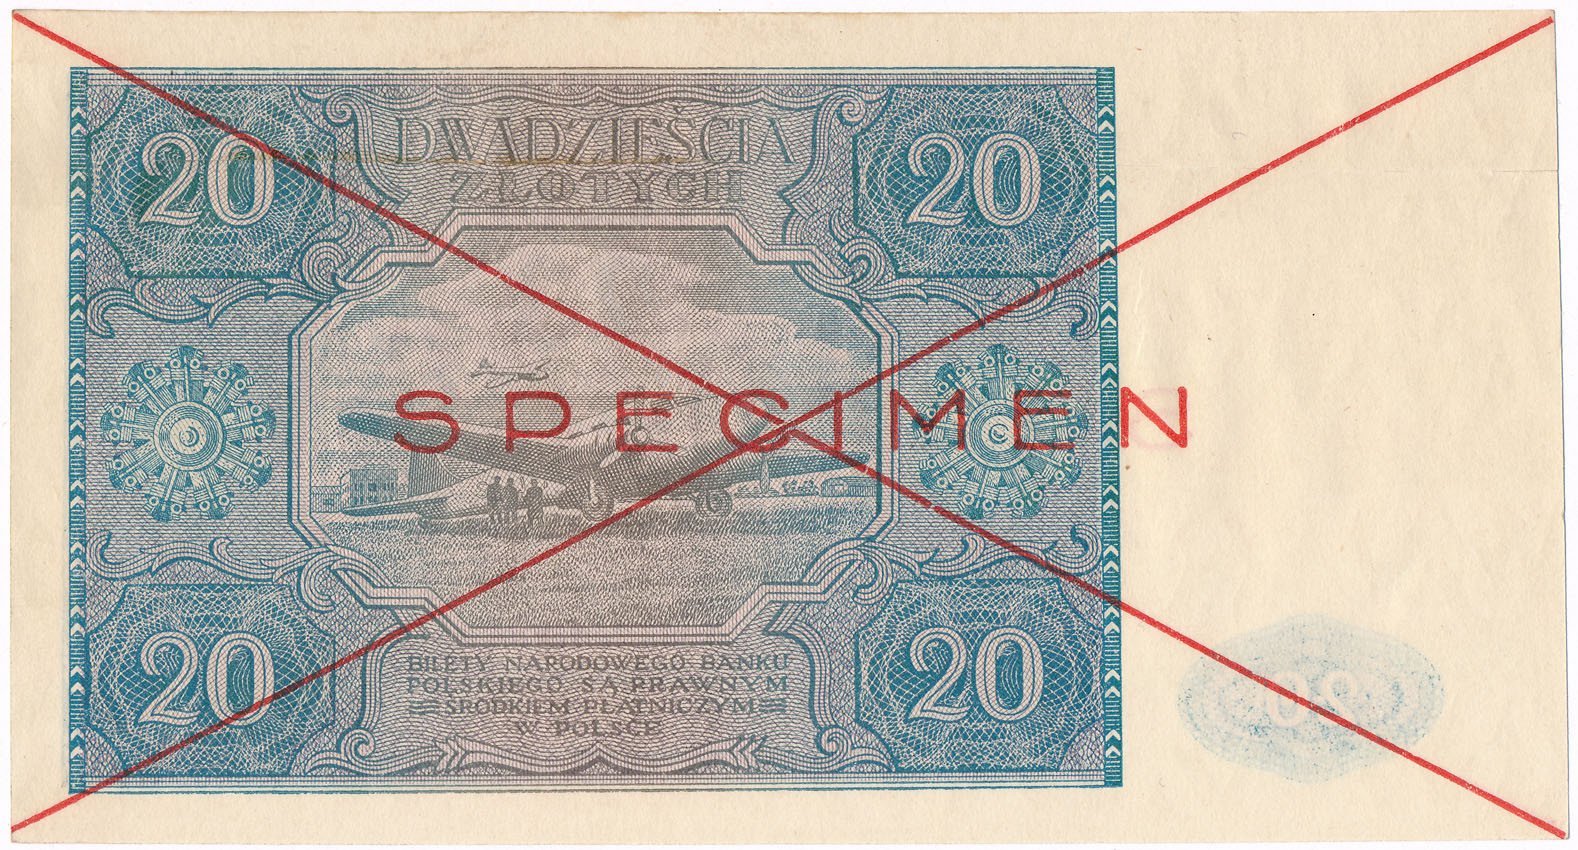 WZÓR / SPECIMEN 20 złotych 1946 , RZADKOŚĆ